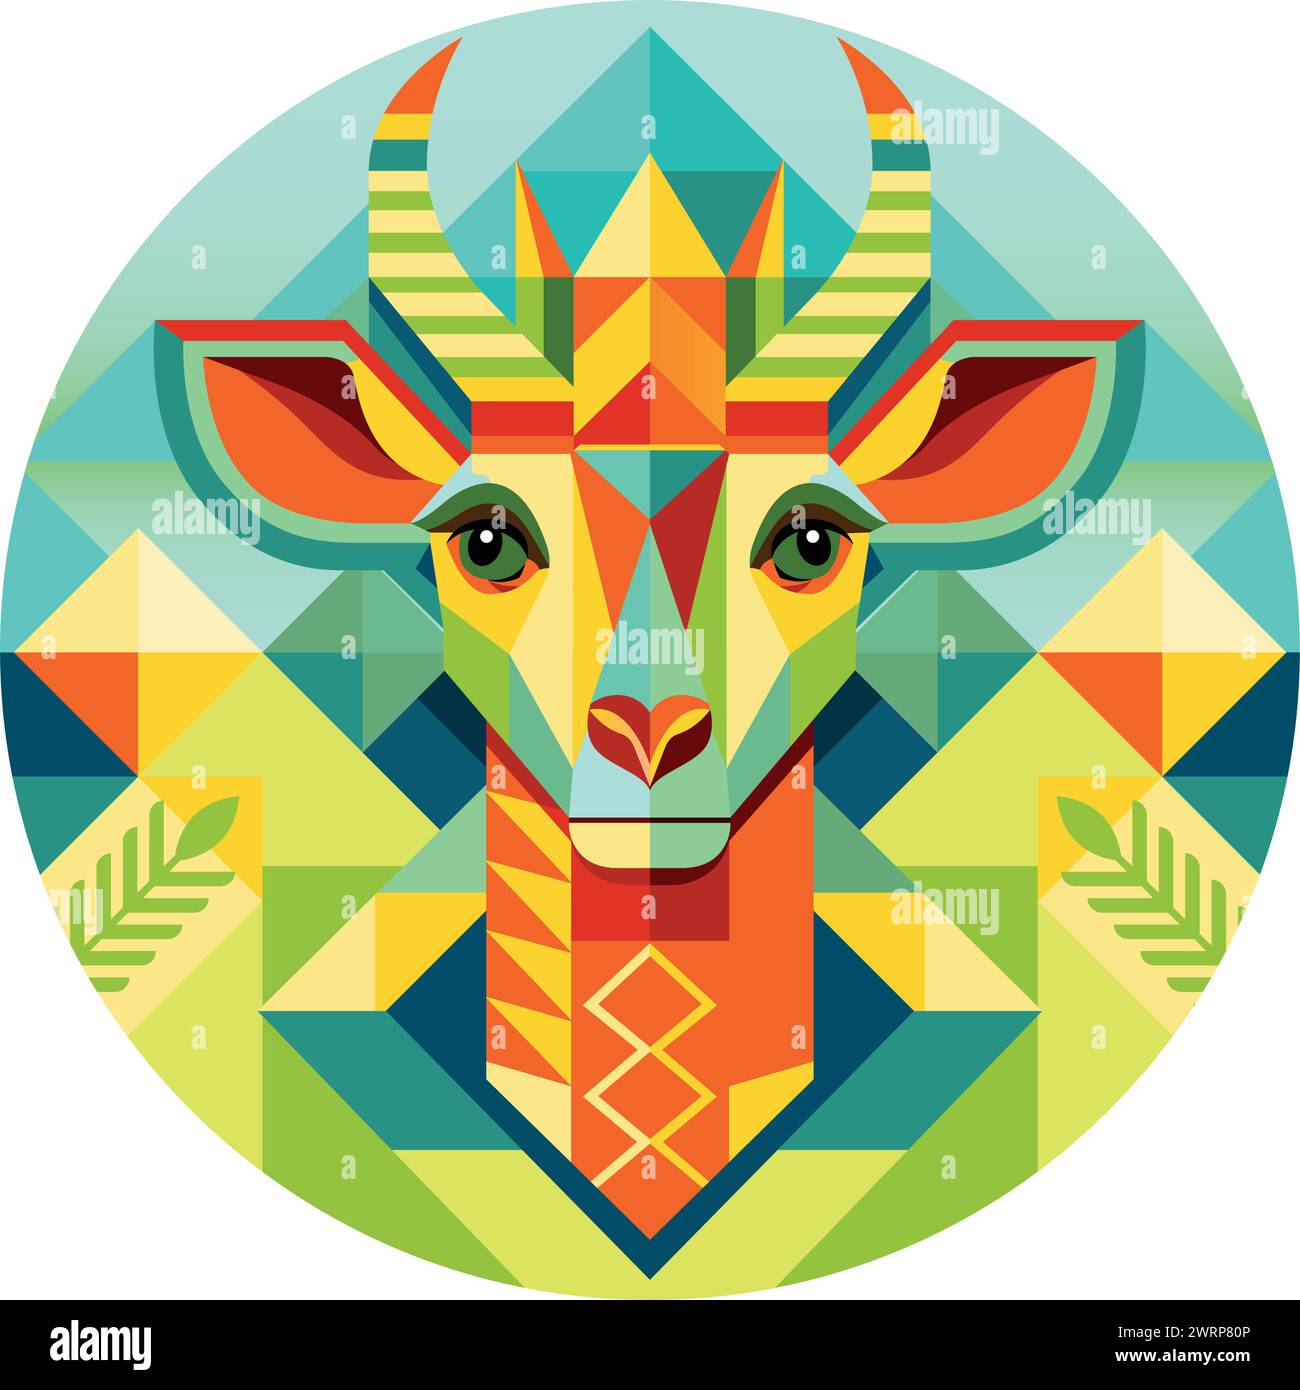 Vue de face du masque africain en forme de tête de girafe dans un style géométrique avec des couleurs chaudes. Image vectorielle Illustration de Vecteur